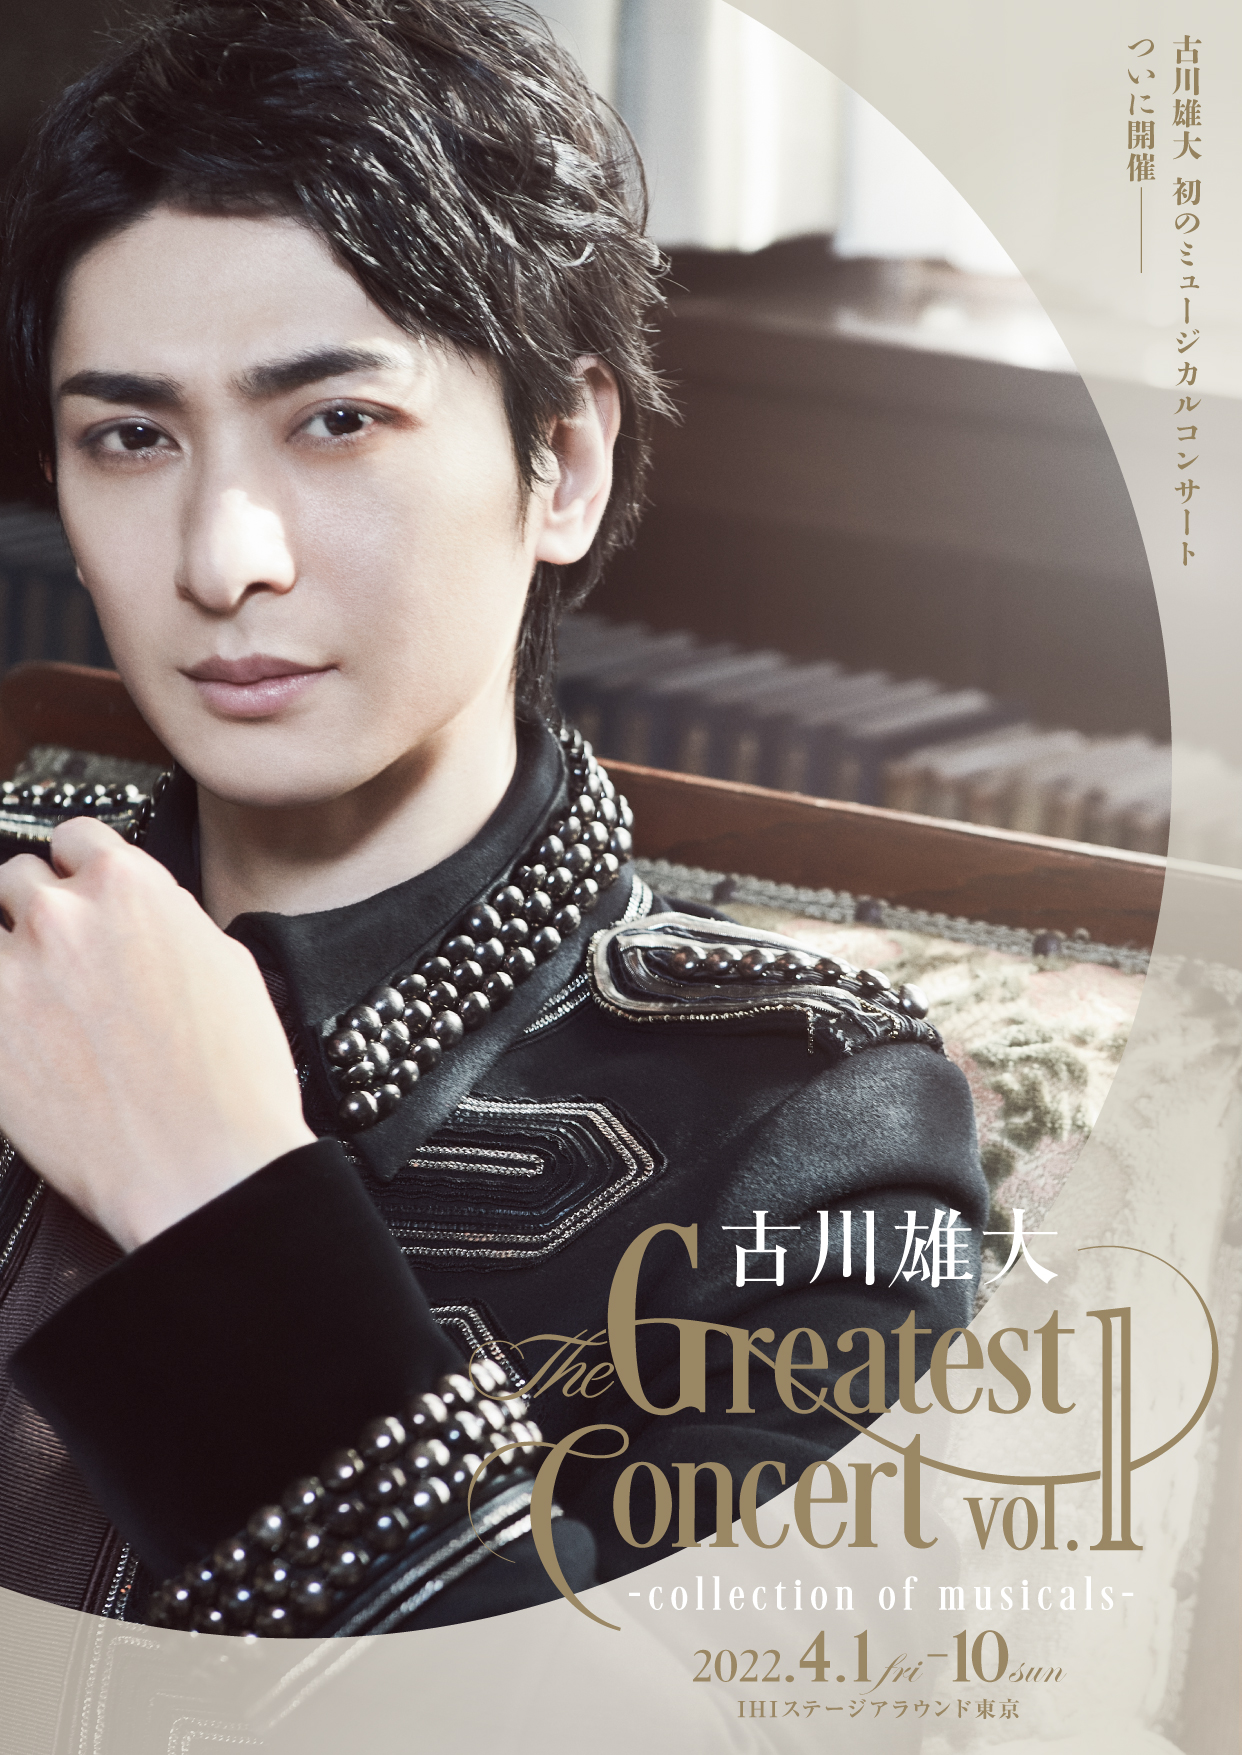 古川雄大 The Greatest Concert vol.1 -collection of musicals 